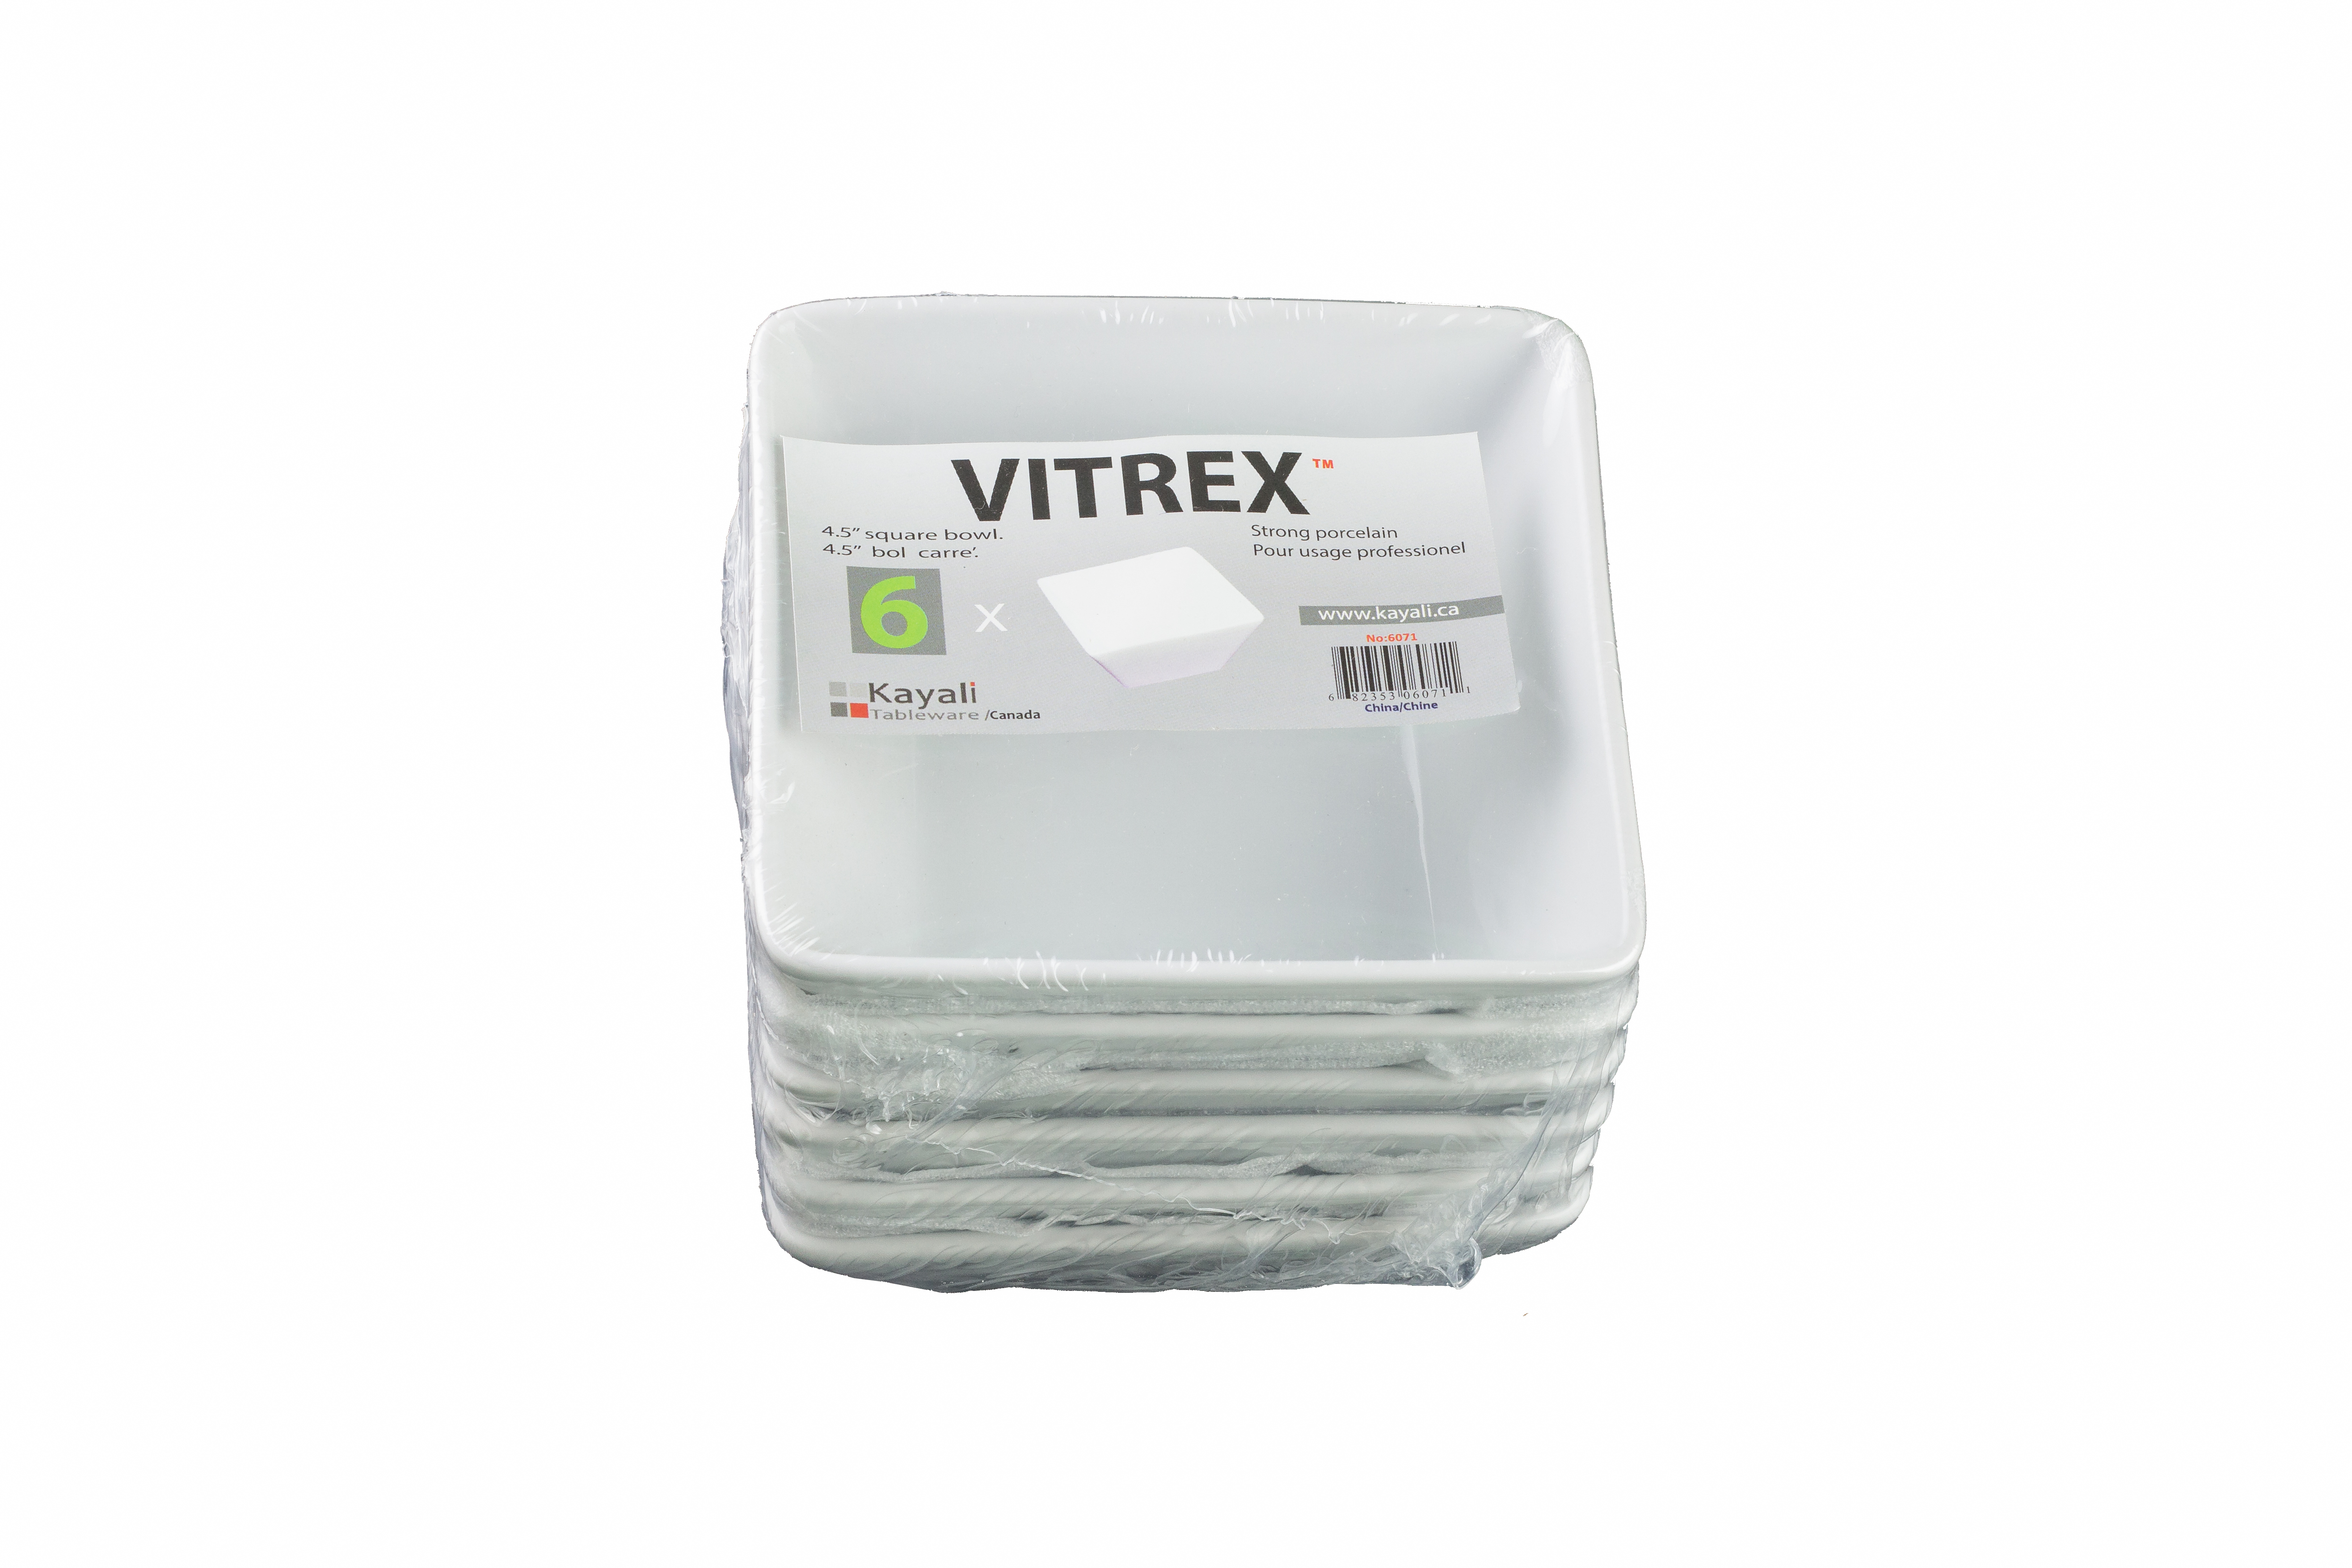 Vitrex 6Pk 4.5'' Square Bowl